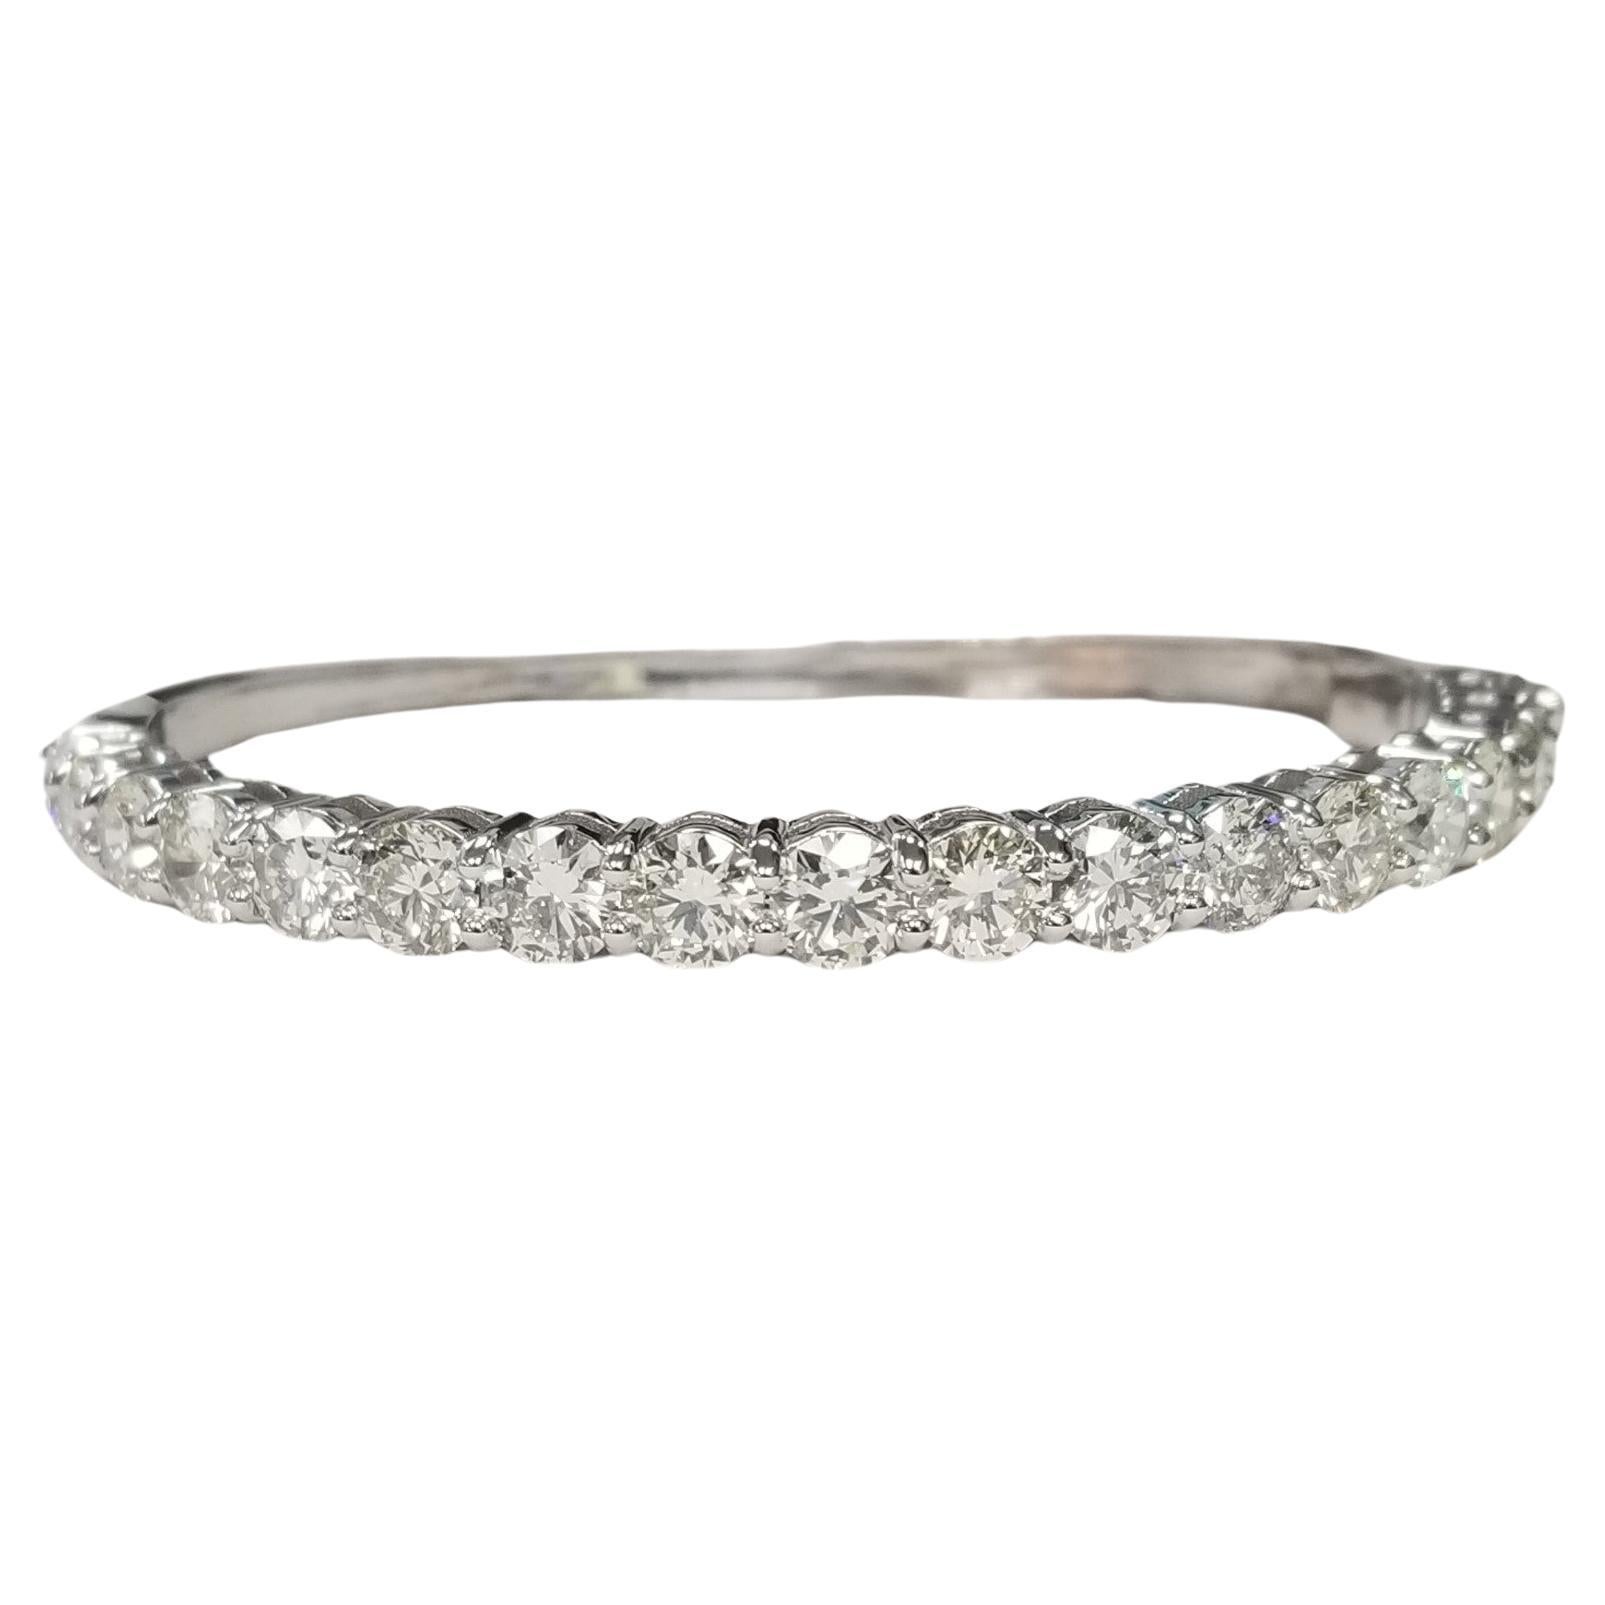 Magnifique bracelet "Bangle" en or blanc 14k avec diamants pesant 9,30 carats.